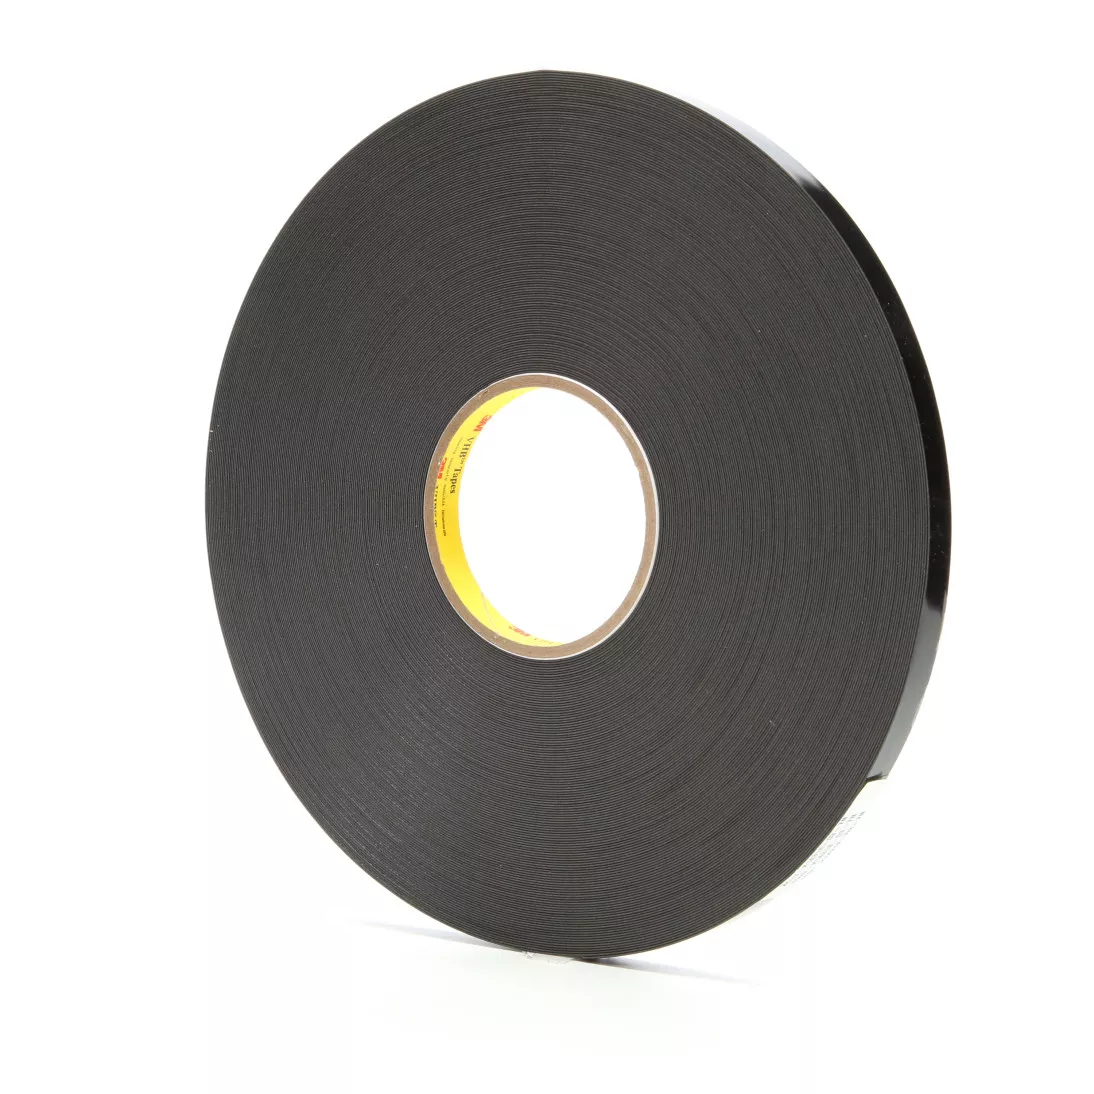 3M™ VHB™ Tape 4929, Black, 1/2 in x 72 yd, 25 mil, 18 rolls per case